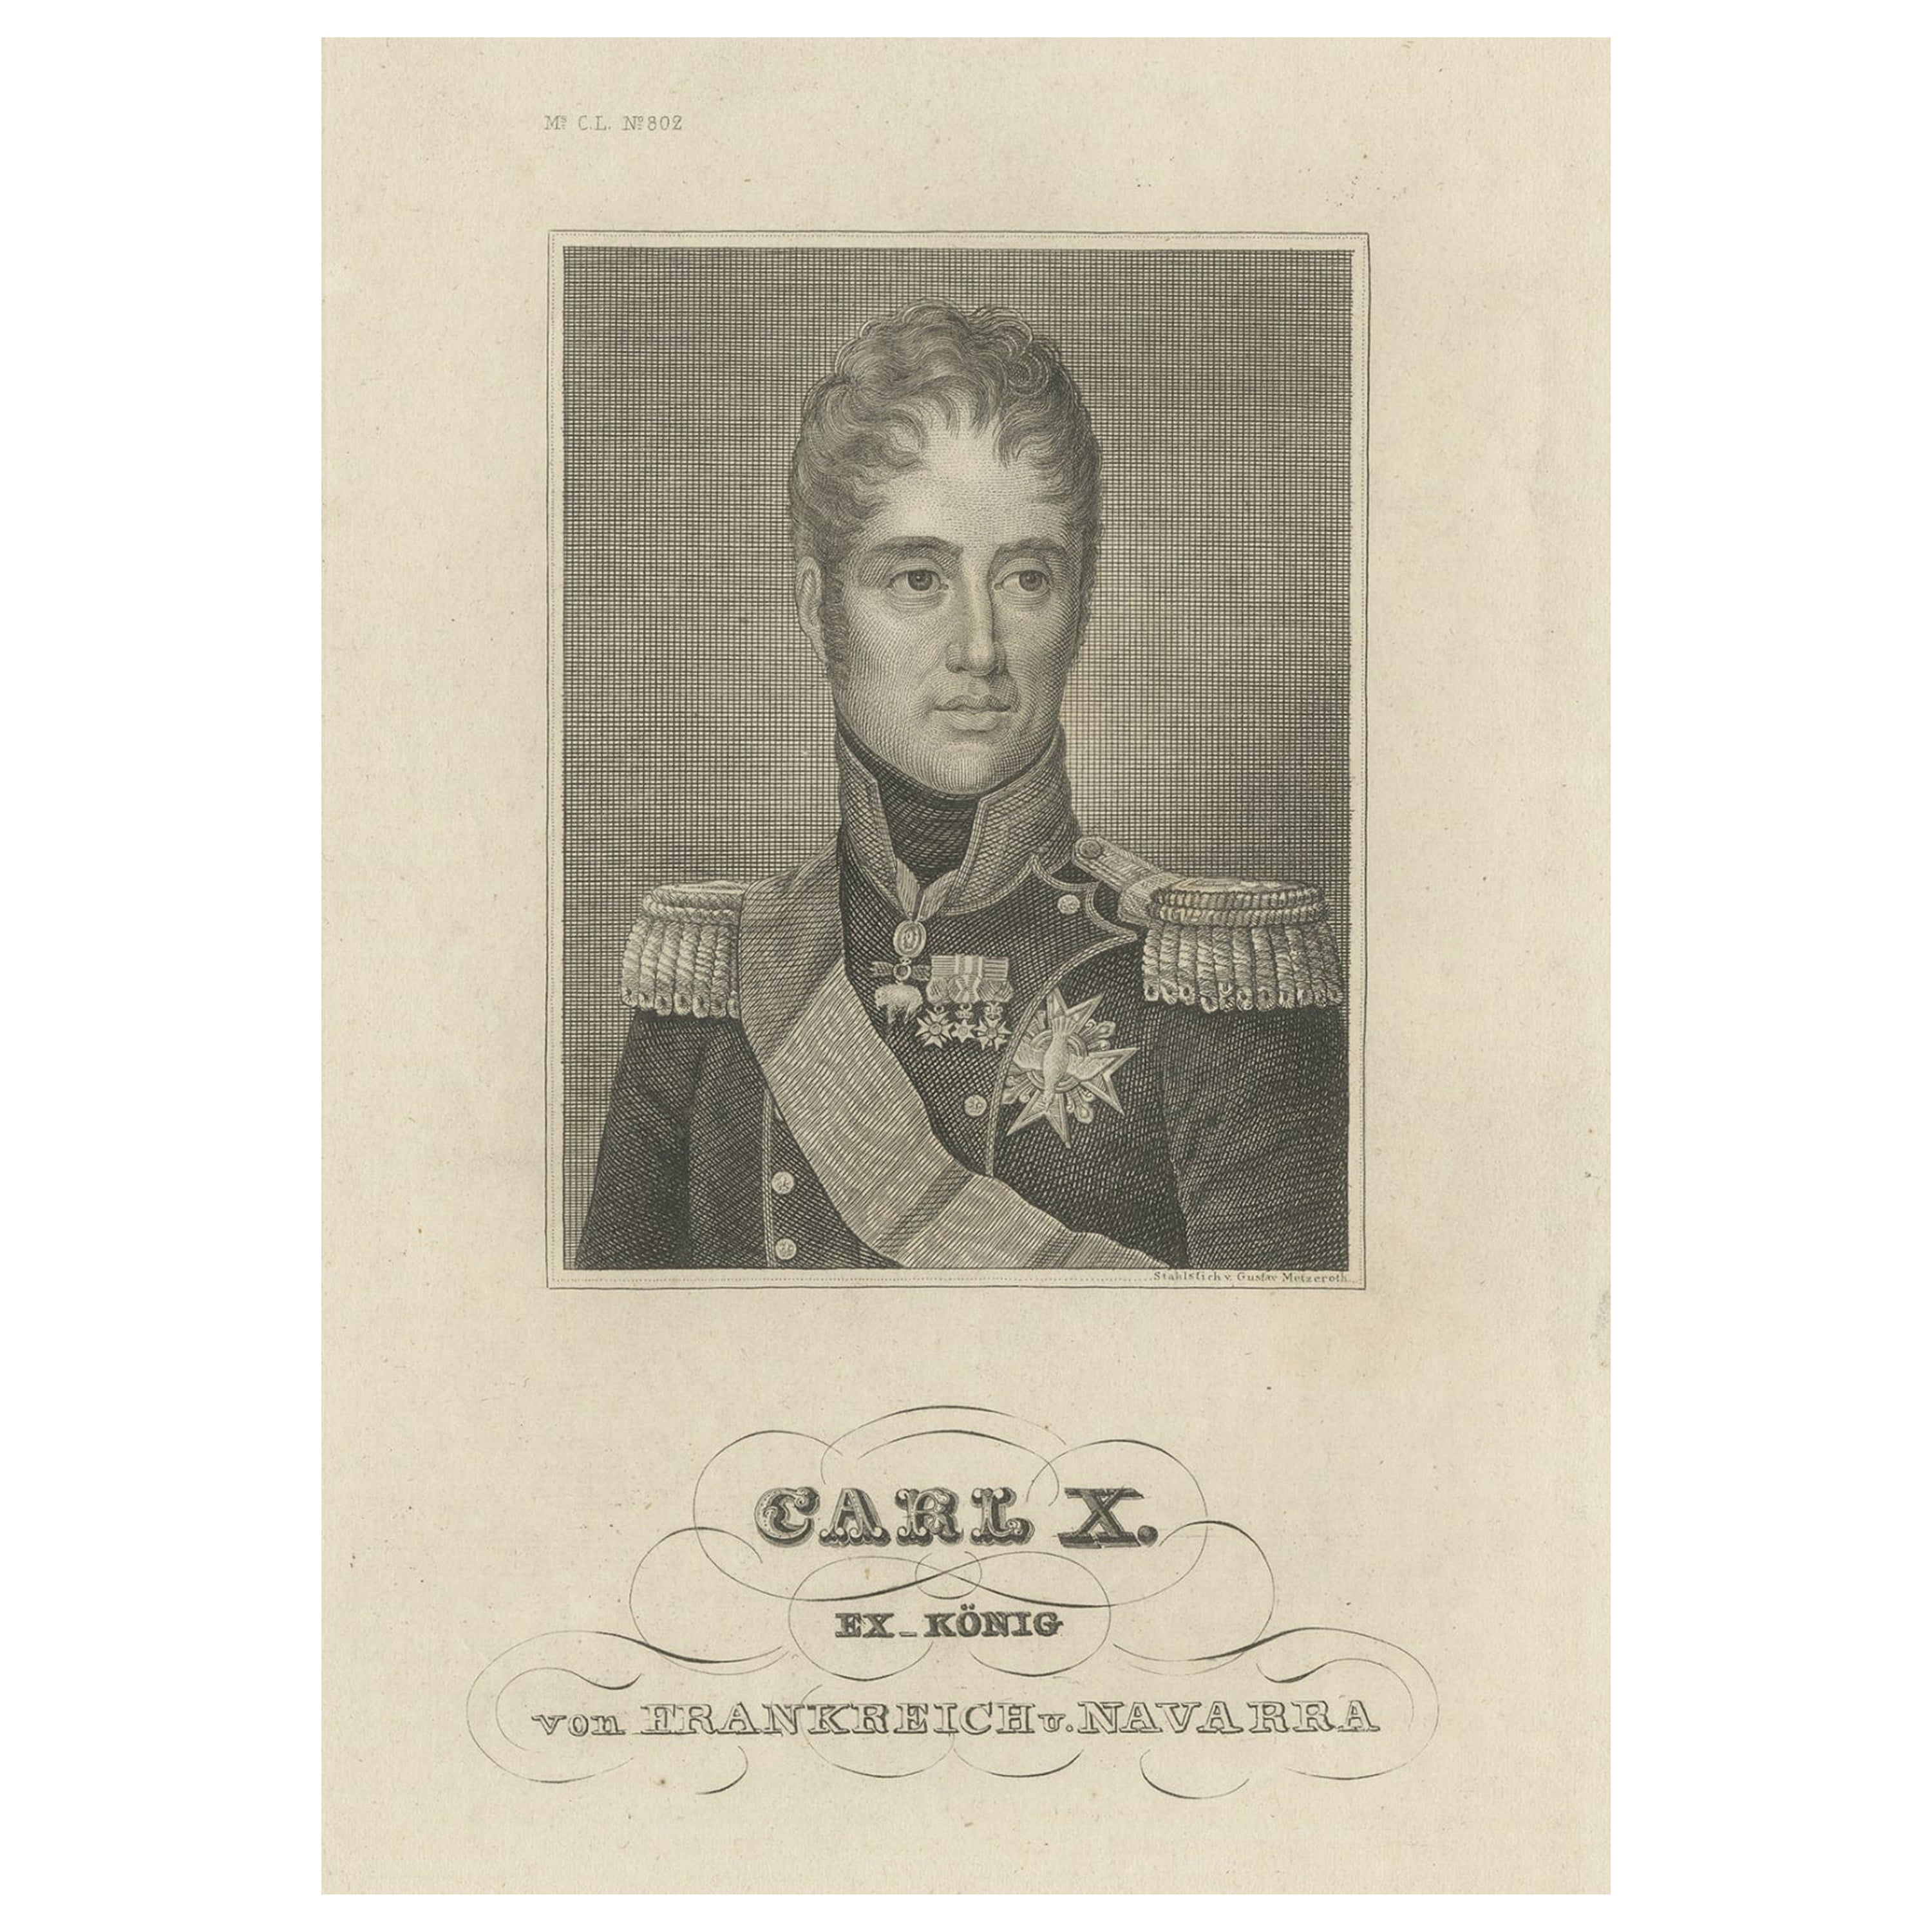 Originales antikes Originalporträt von Karl X., König von Frankreich, ca.1840